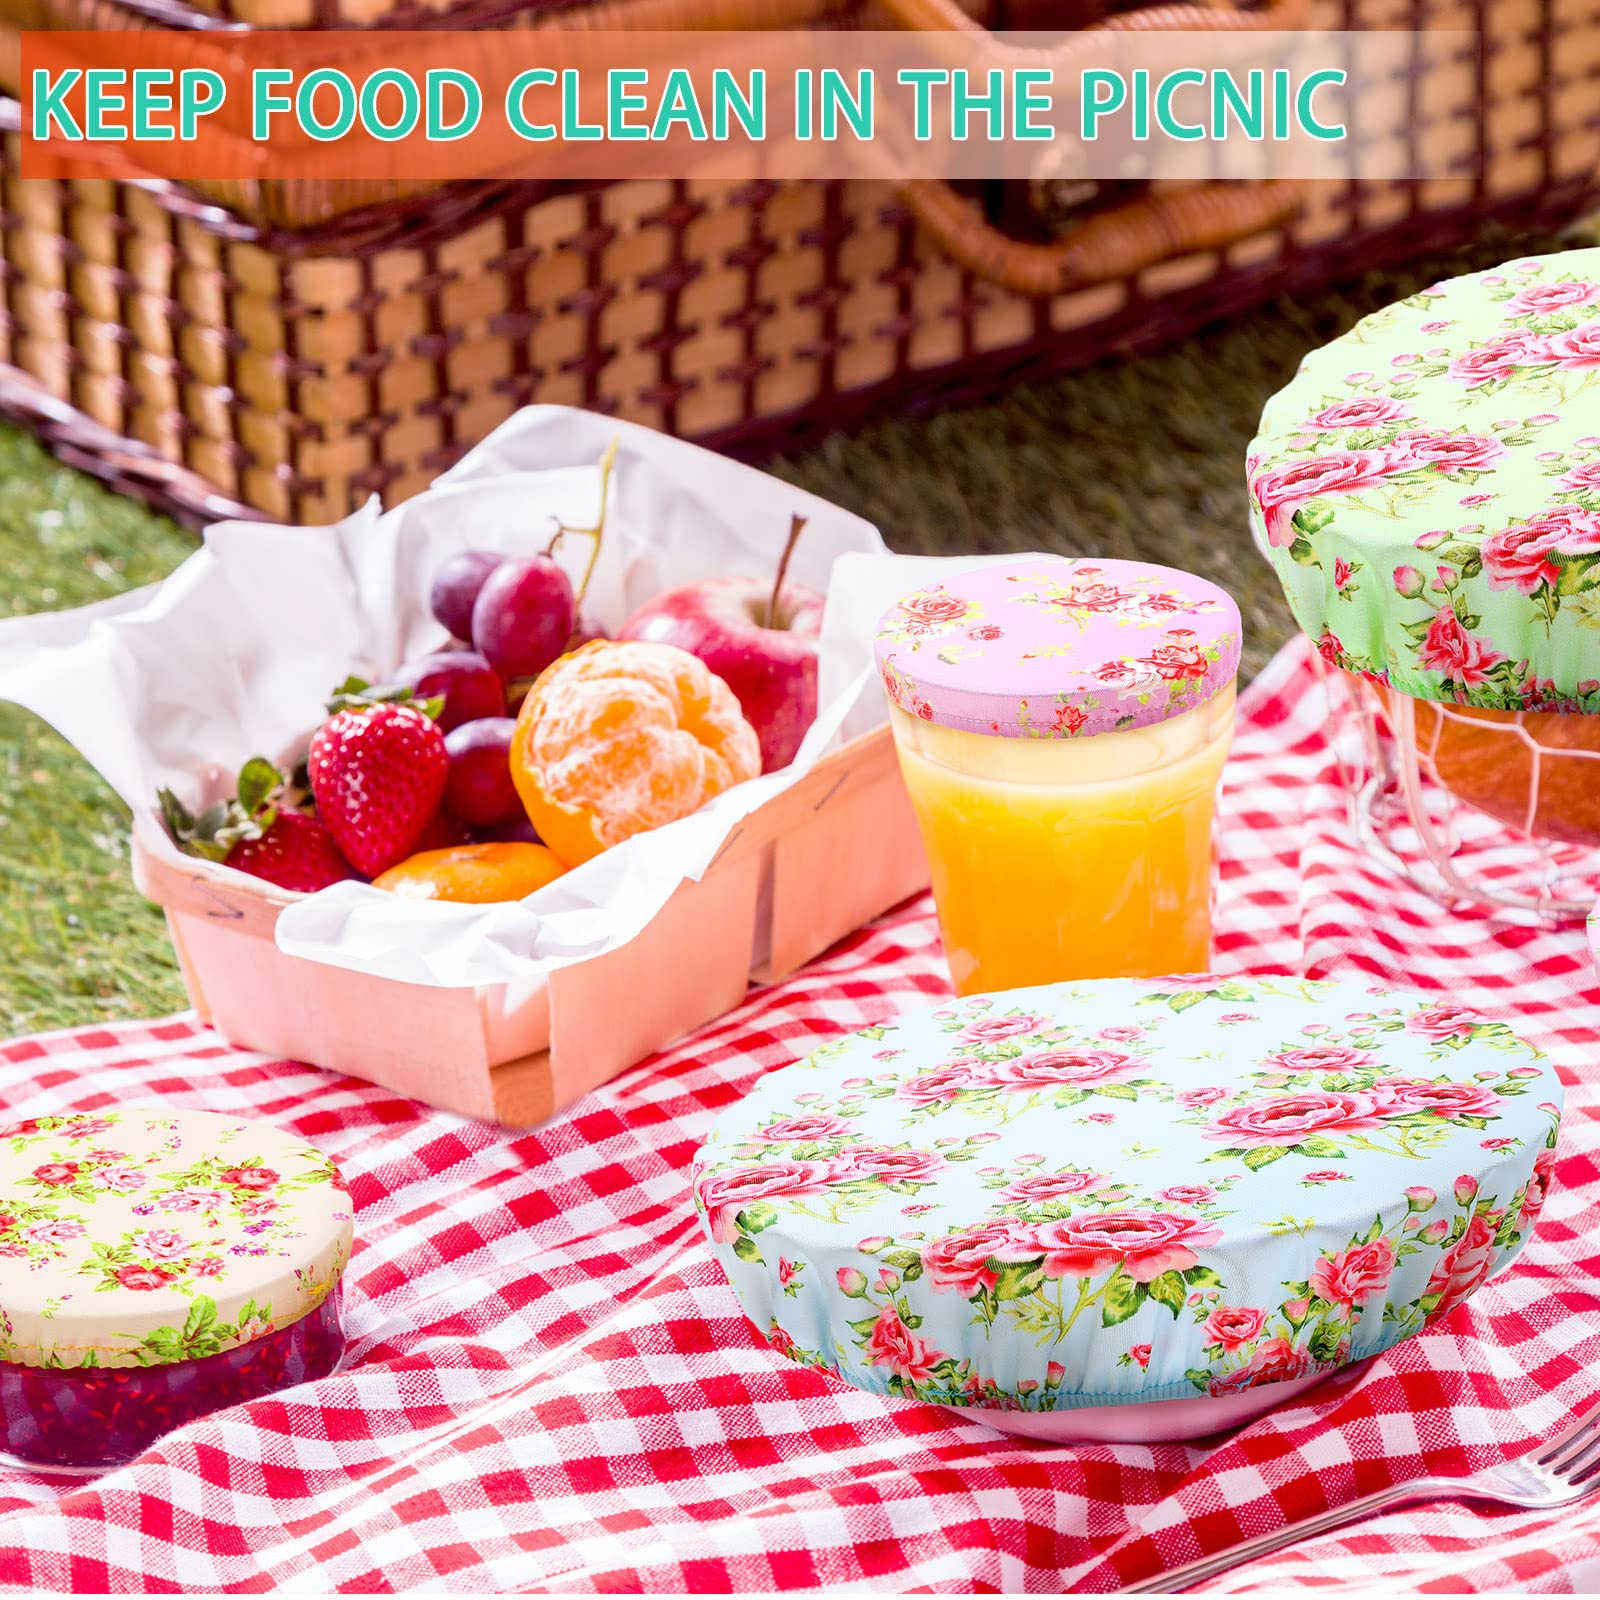 Cubiertas de tazón reutilizables de estilo floral personalizadas Cubiertas elásticas de almacenamiento de alimentos Cubiertas de pan de algodón Tapas para alimentos, frutas